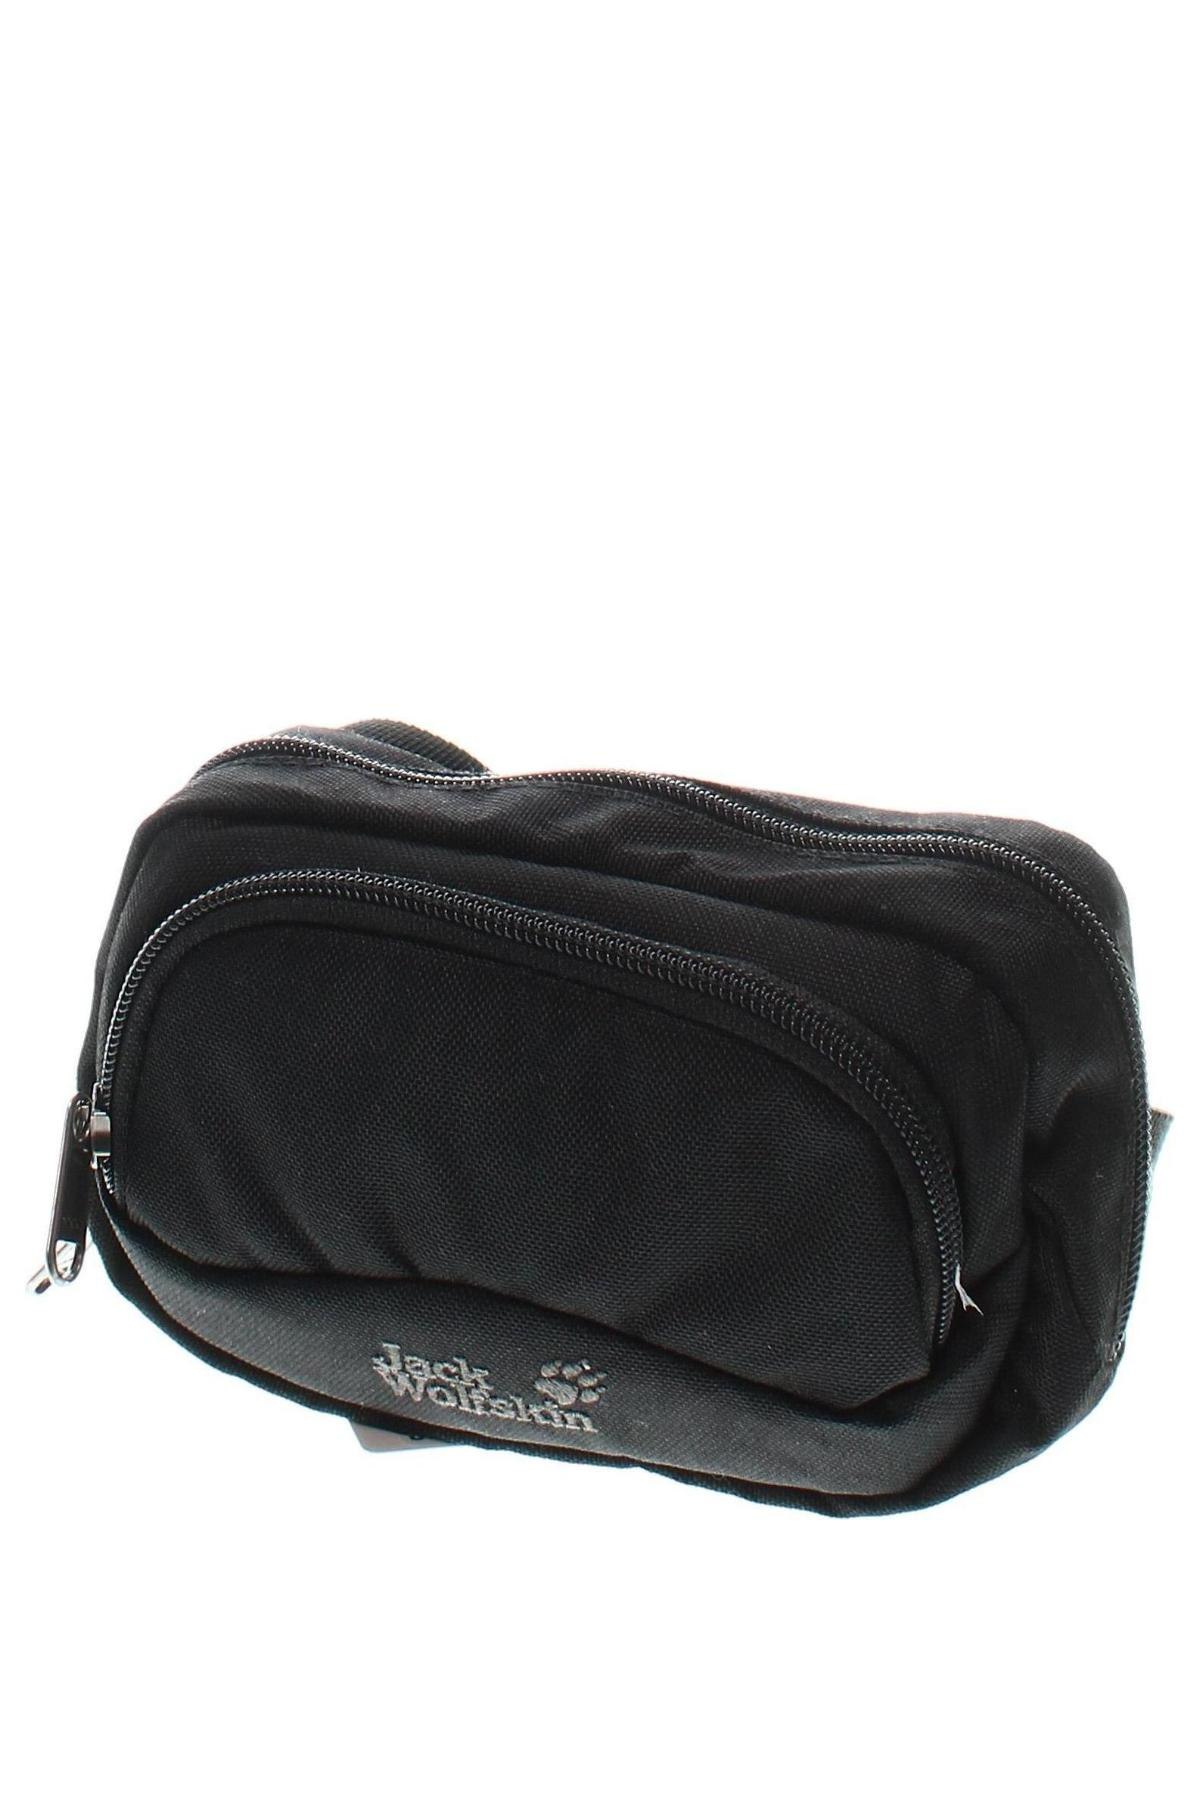 Τσάντα Jack Wolfskin, Χρώμα Μαύρο, Τιμή 24,50 €